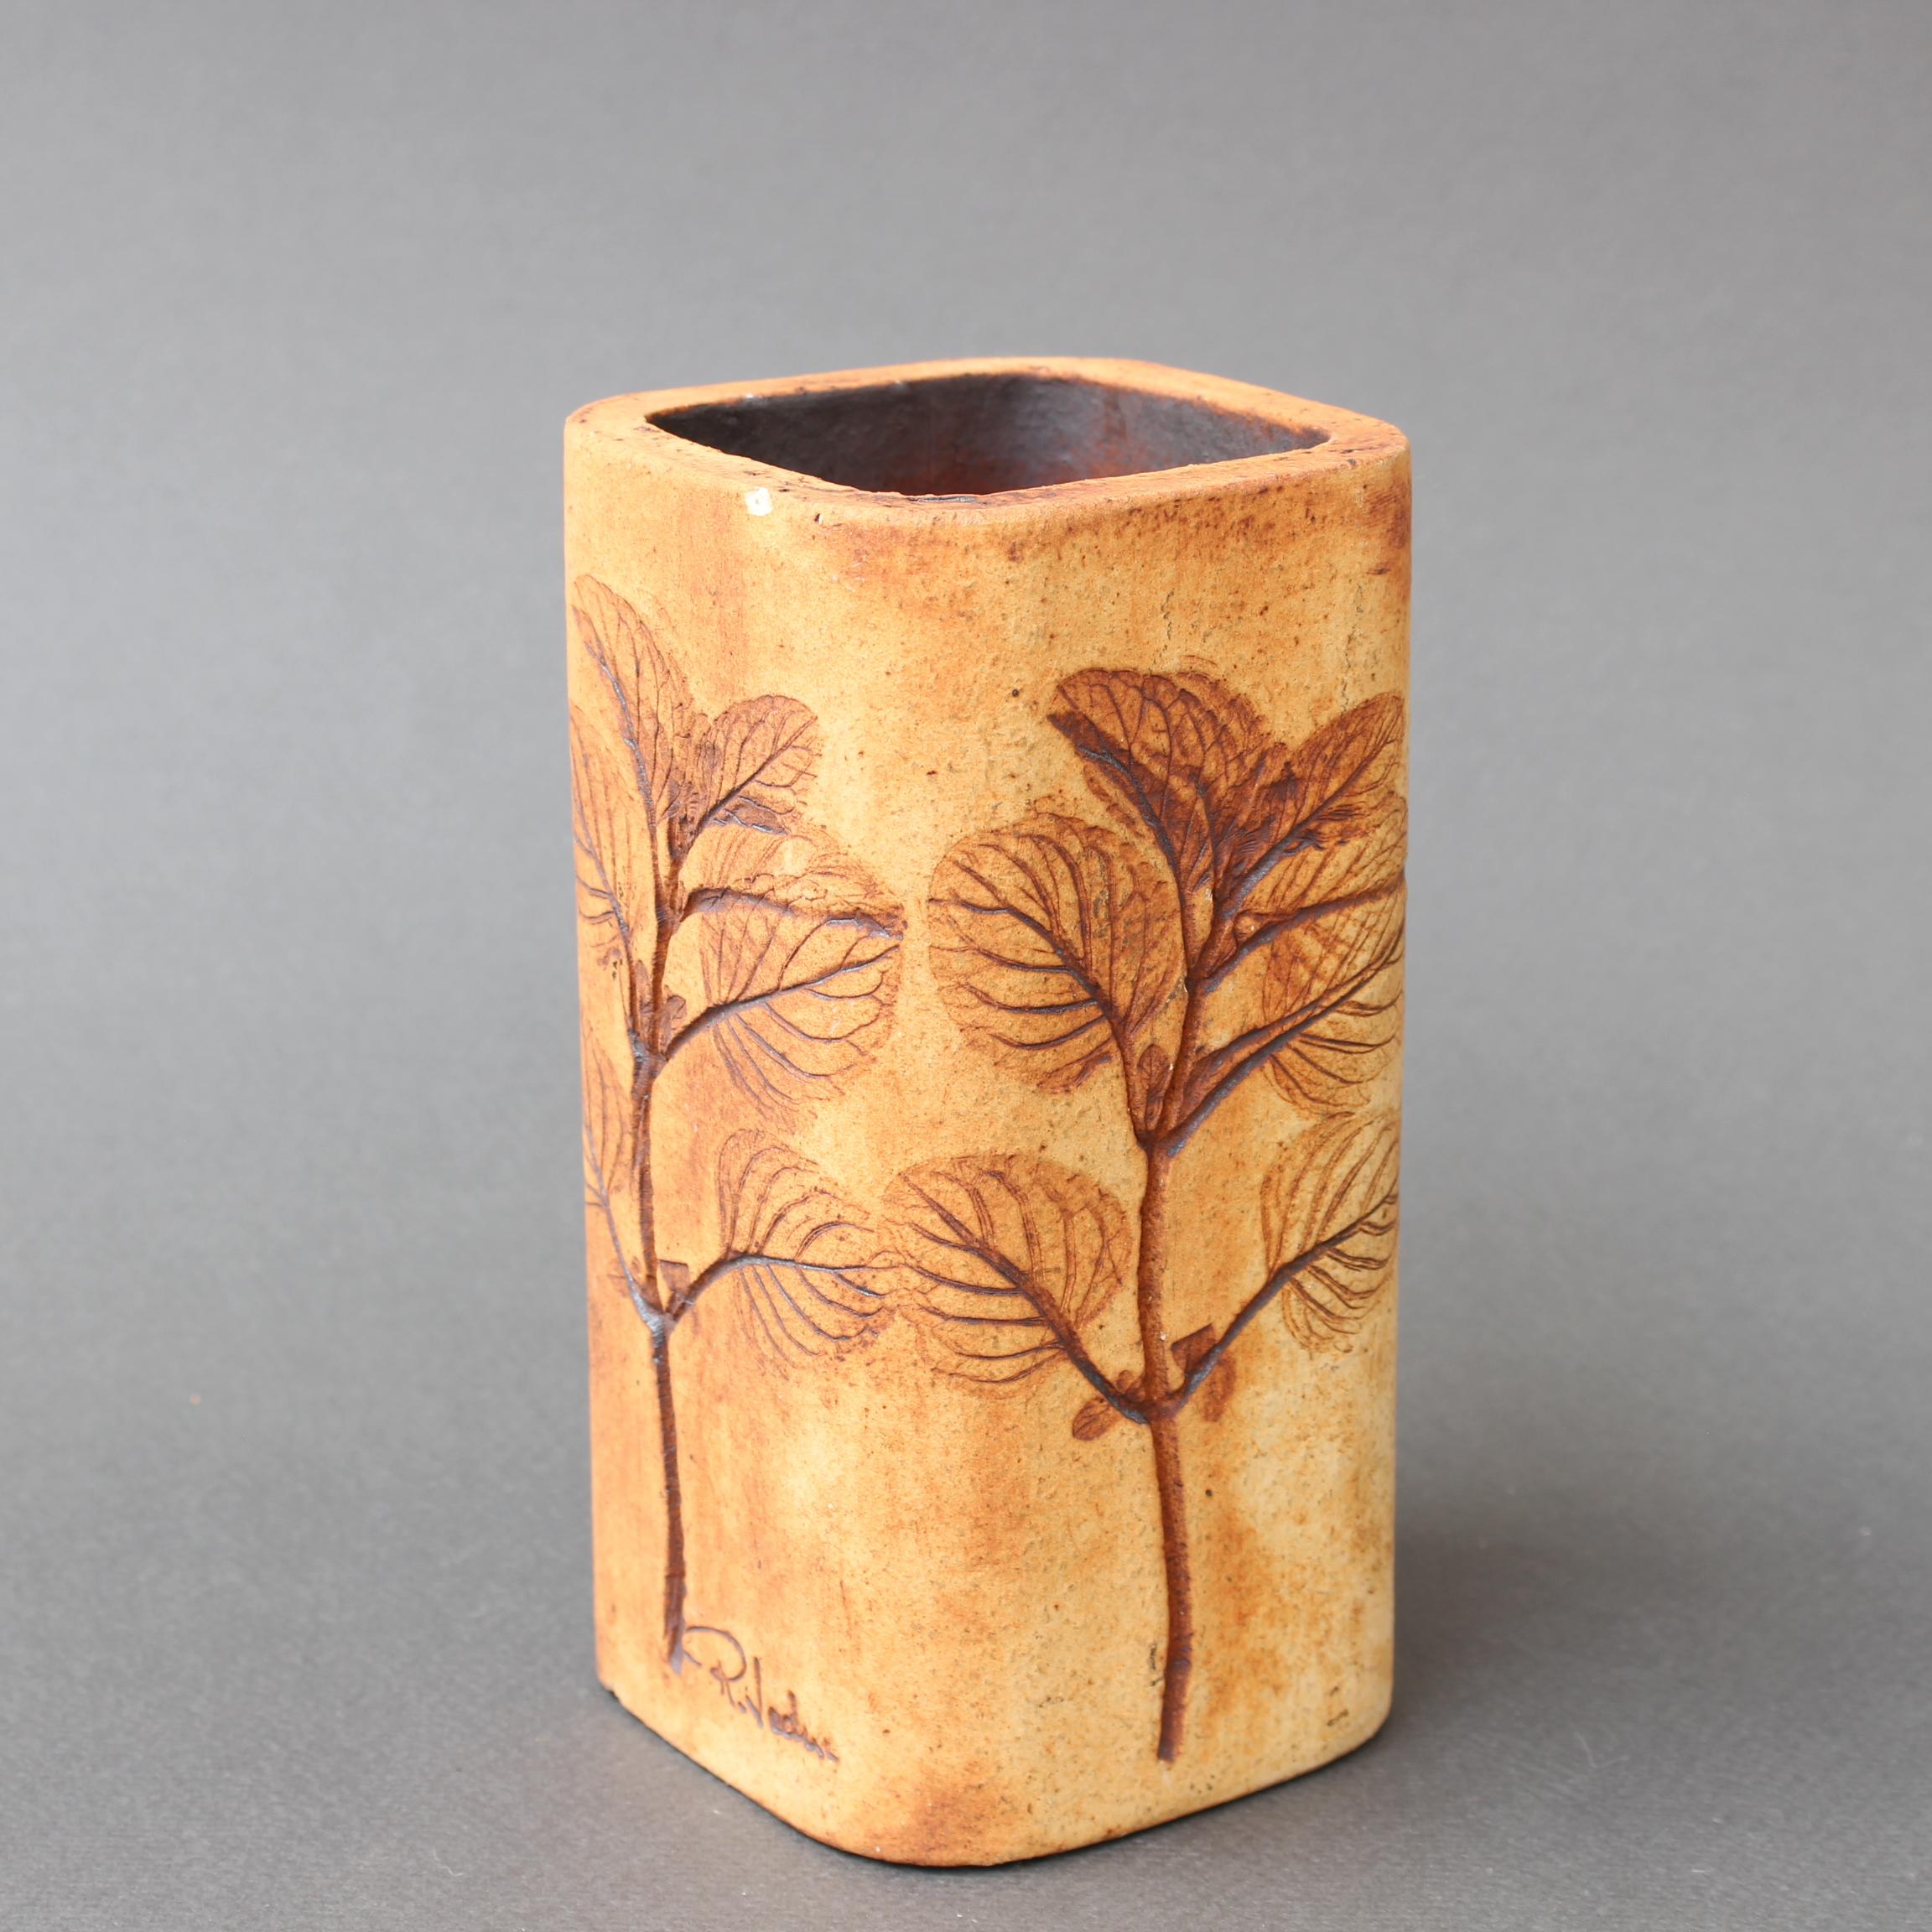 Vintage-Keramikvase (oder Bleistifthalter, wenn Sie das bevorzugen) von Raymonde Leduc (um 1970). Sandsteinfarbenes kleines Gefäß mit Pflanzenmotiven, die auf allen vier Seiten eingelegt sind. In gutem Gesamtzustand mit nur einem einzigen, sehr